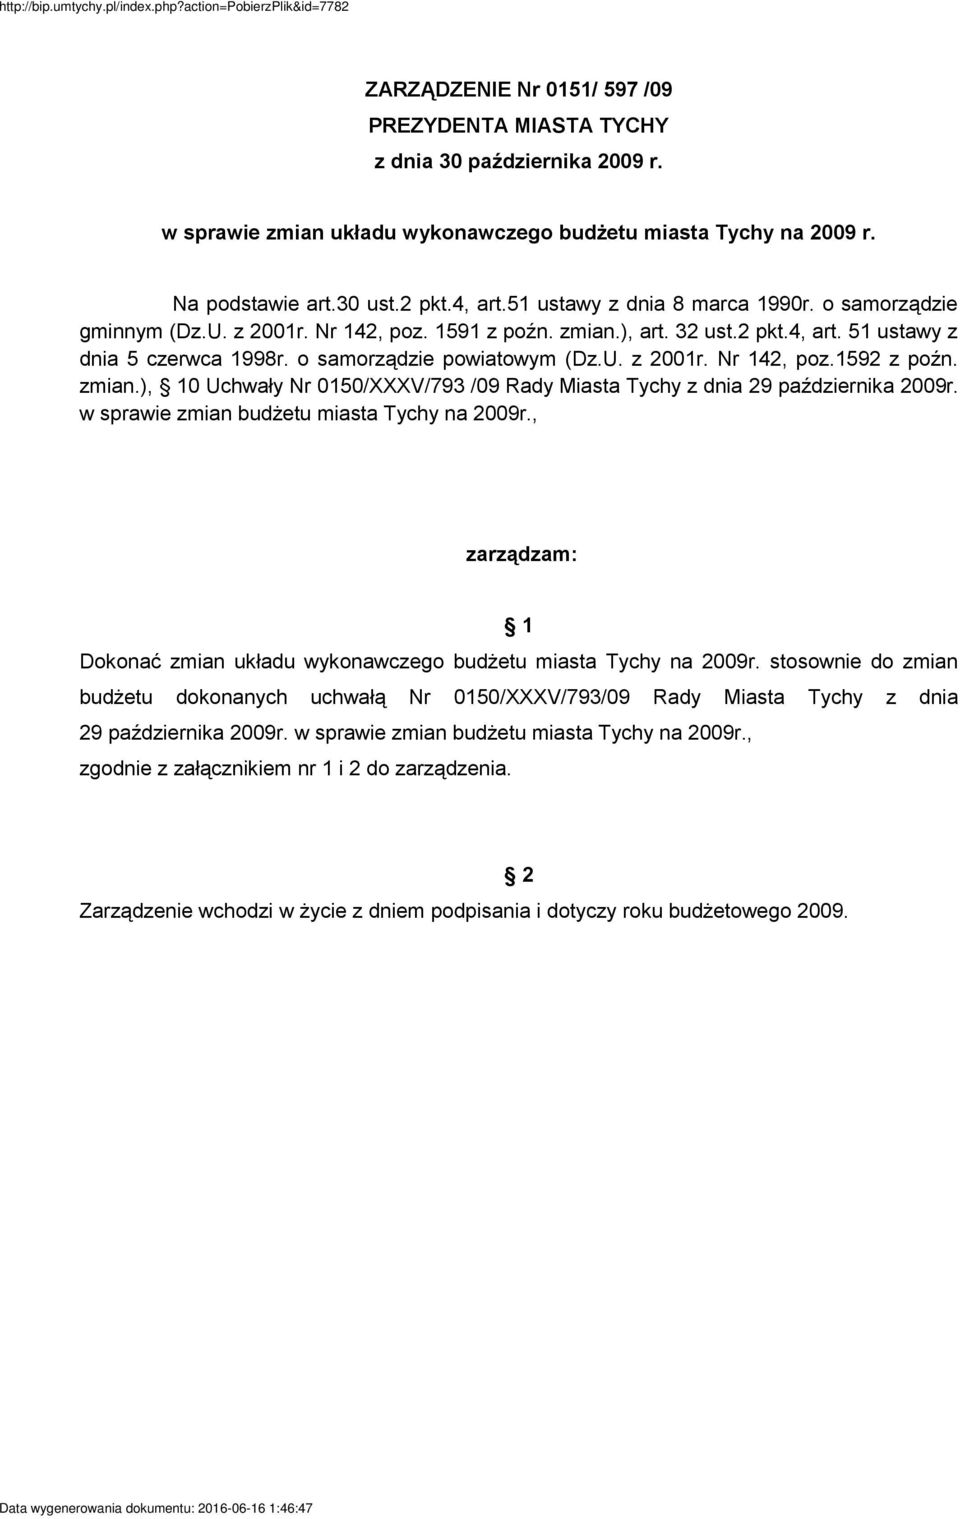 zmian.), 10 Uchwały Nr 0150/XXXV/793 /09 Rady Miasta Tychy z dnia 29 października 2009r. w sprawie zmian budżetu miasta Tychy na 2009r.